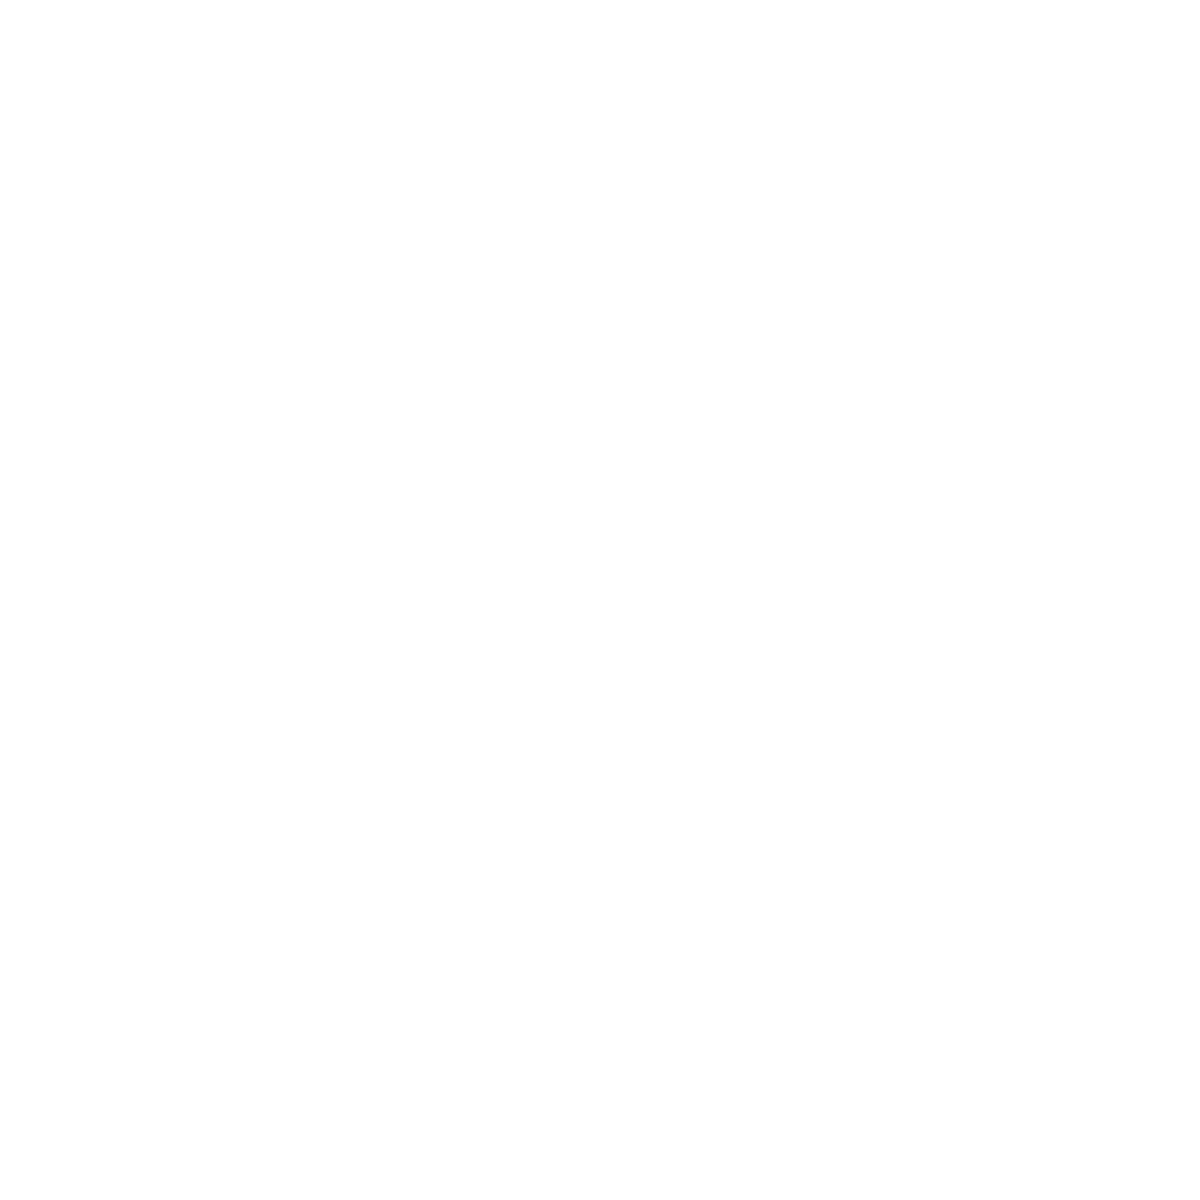 West Site Fitness Club Ostrołęka